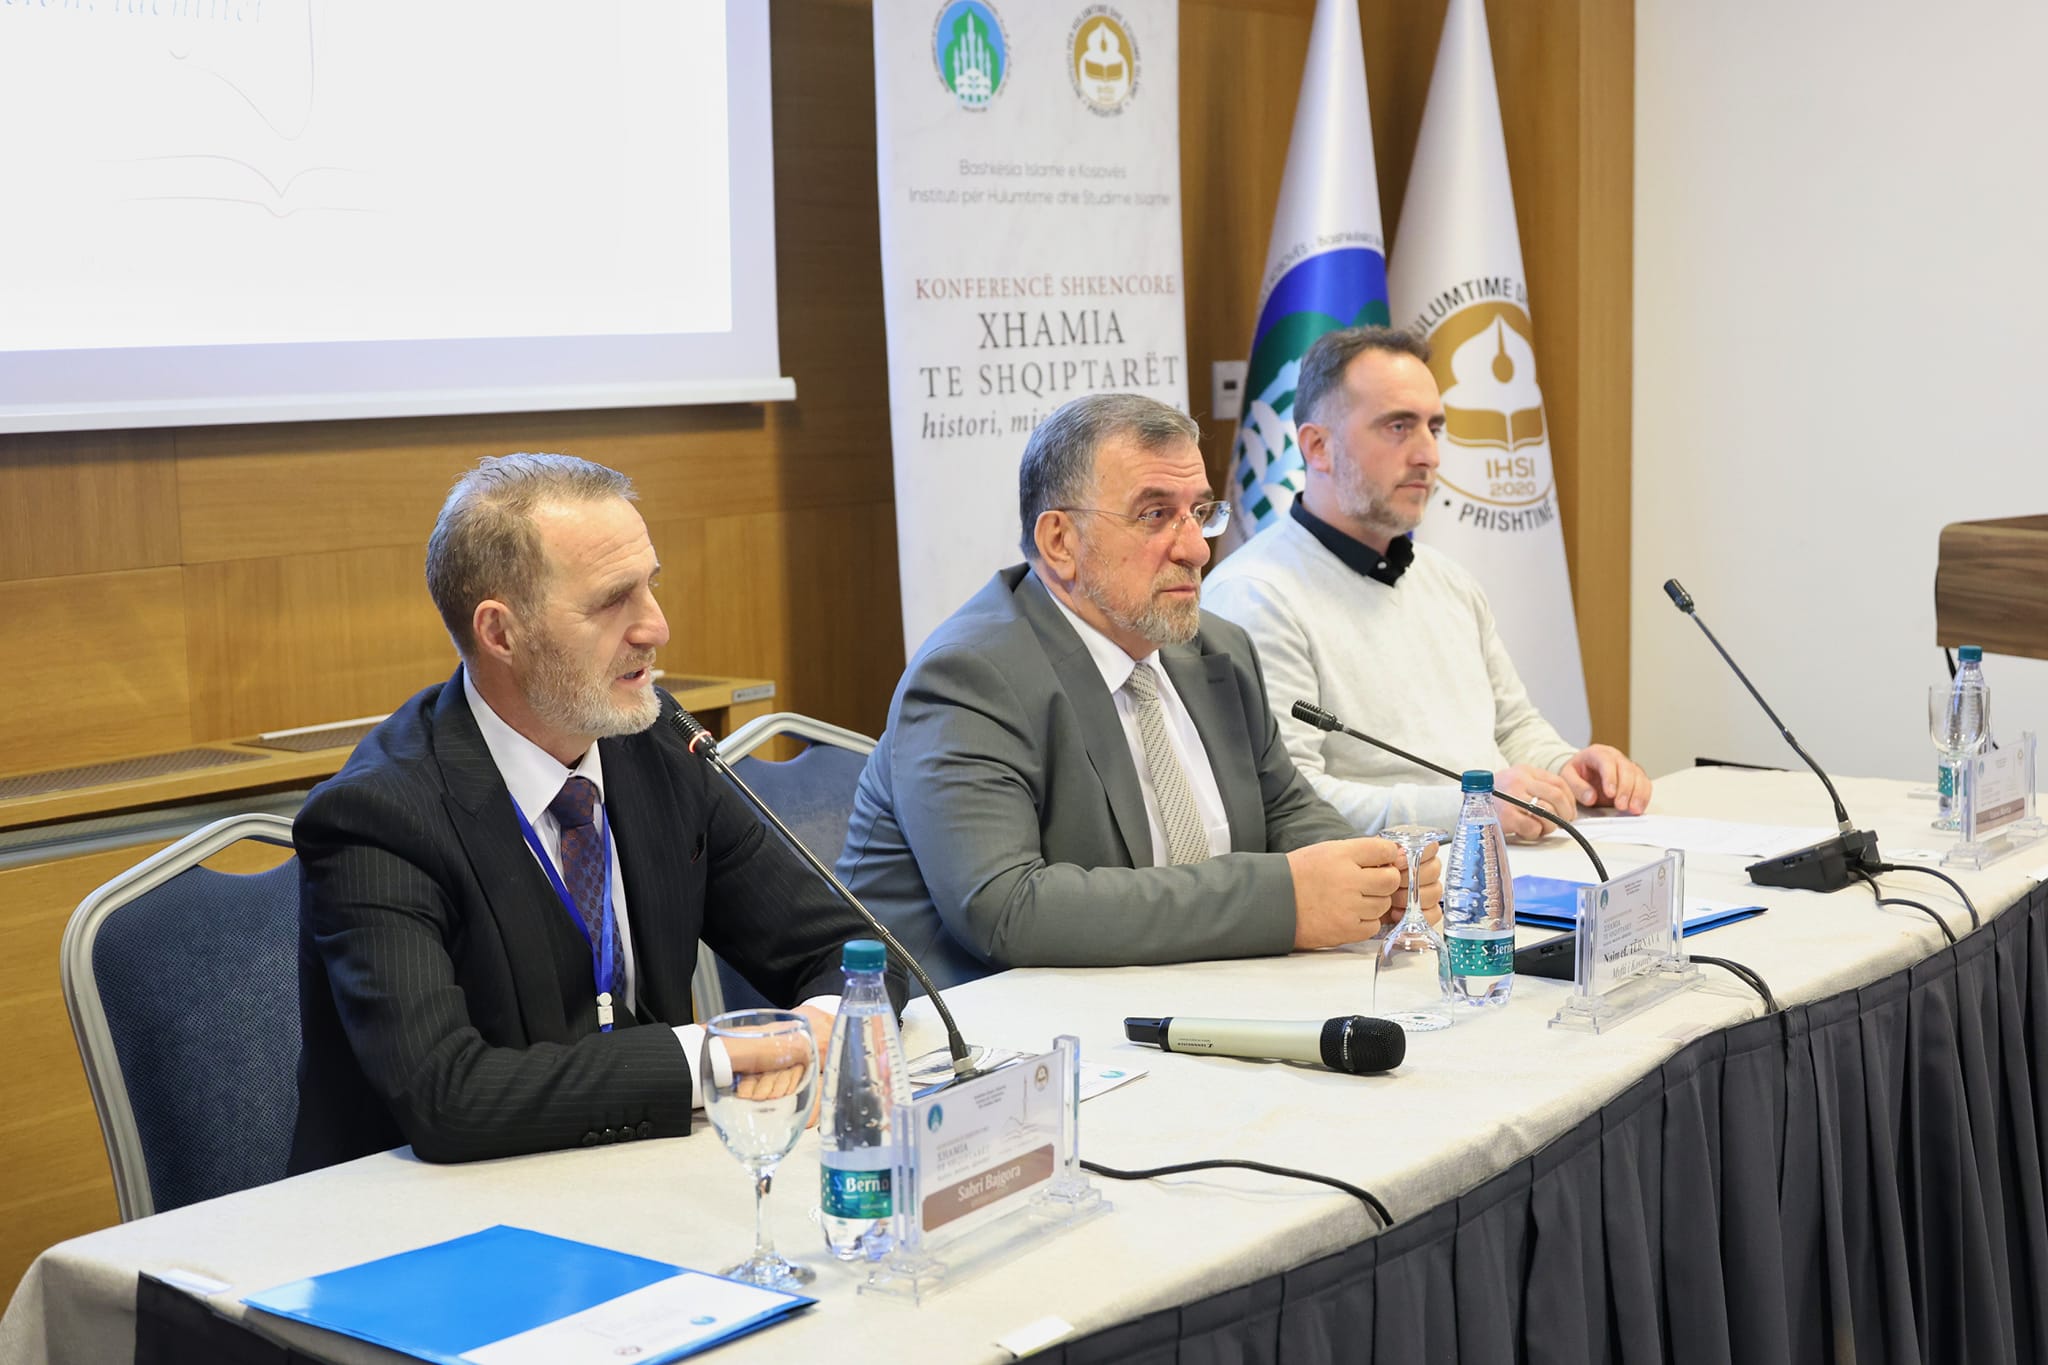 Përfundoi punimet Konferenca “Xhamia te shqiptarët – histori, mision, identitet”